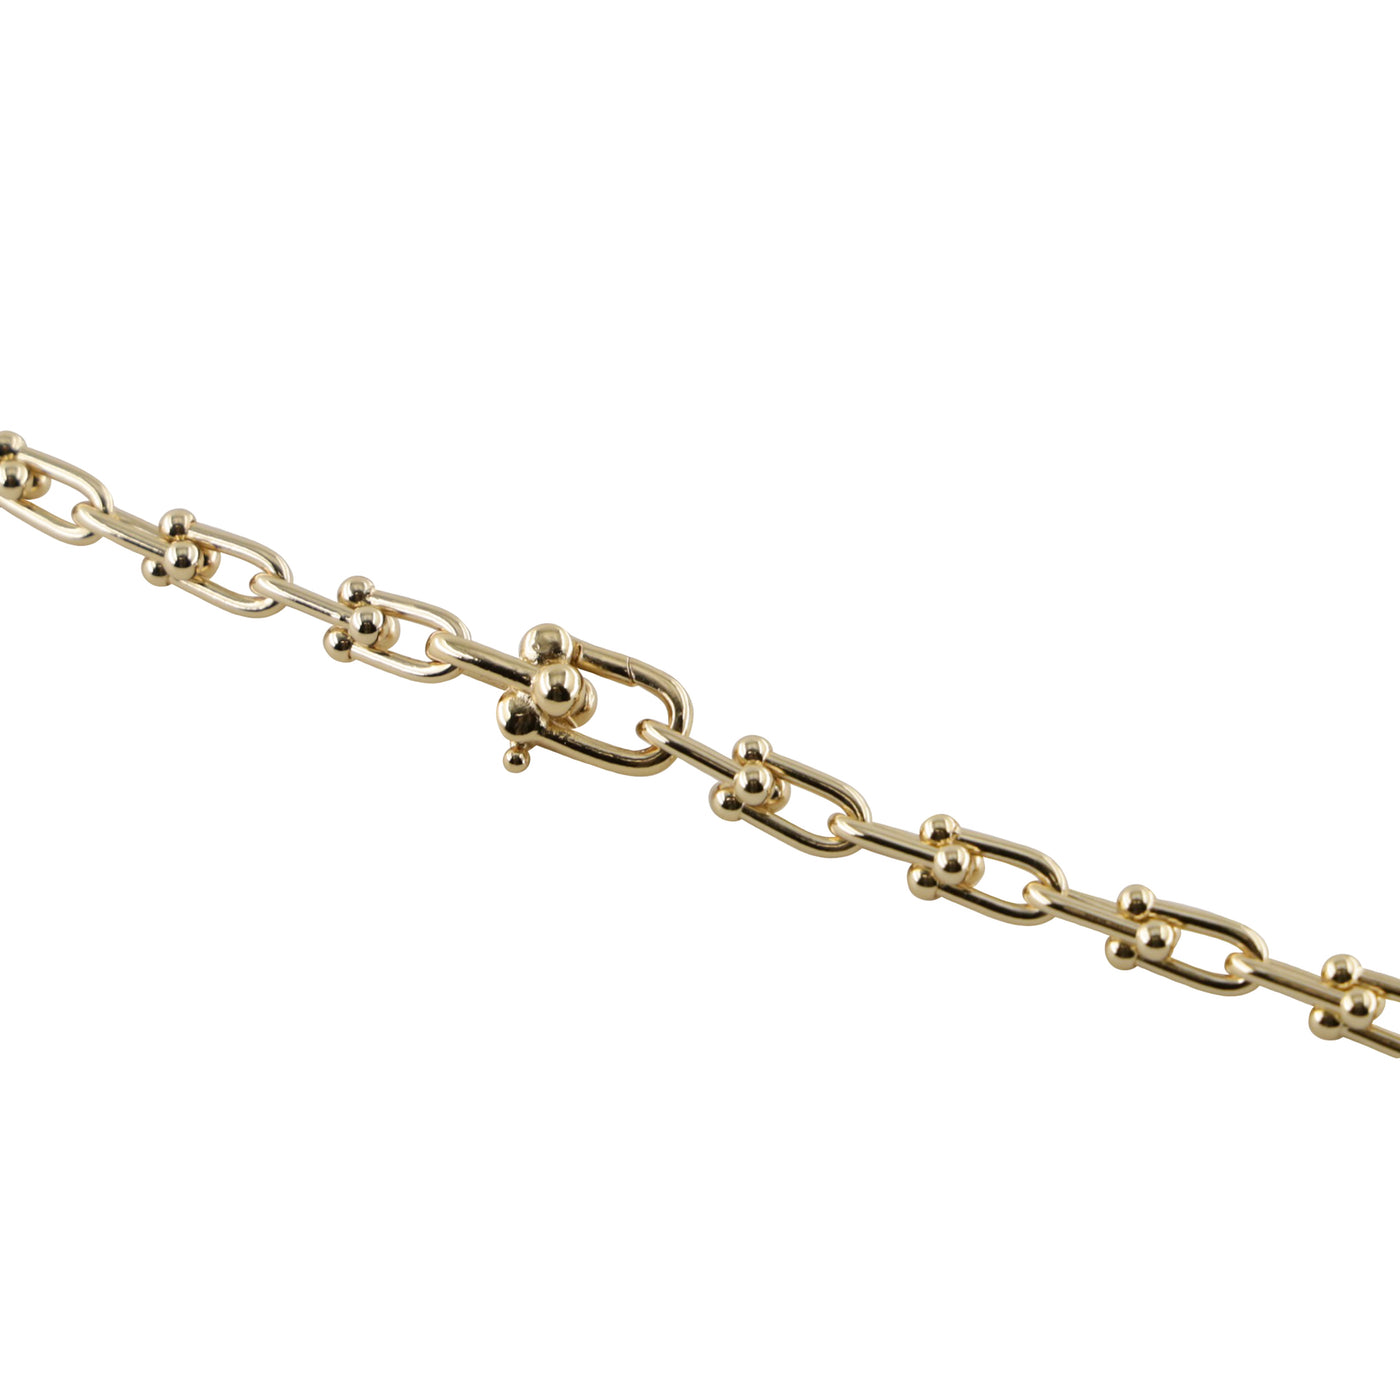 Giois Chain | Angela Jewellery Australia